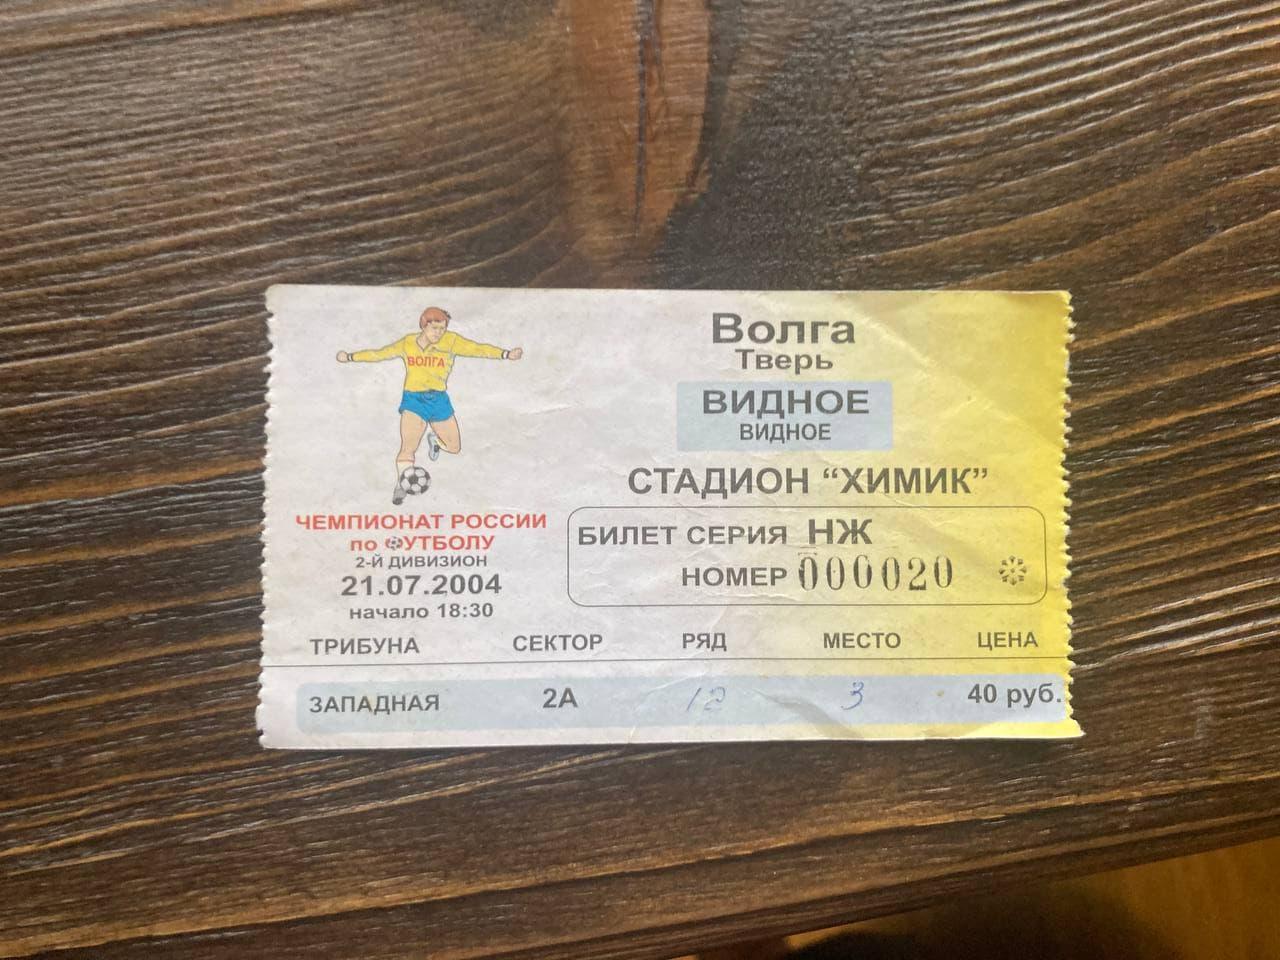 Билет на матч Волга Тверь - Видное 21.07.2004 г.